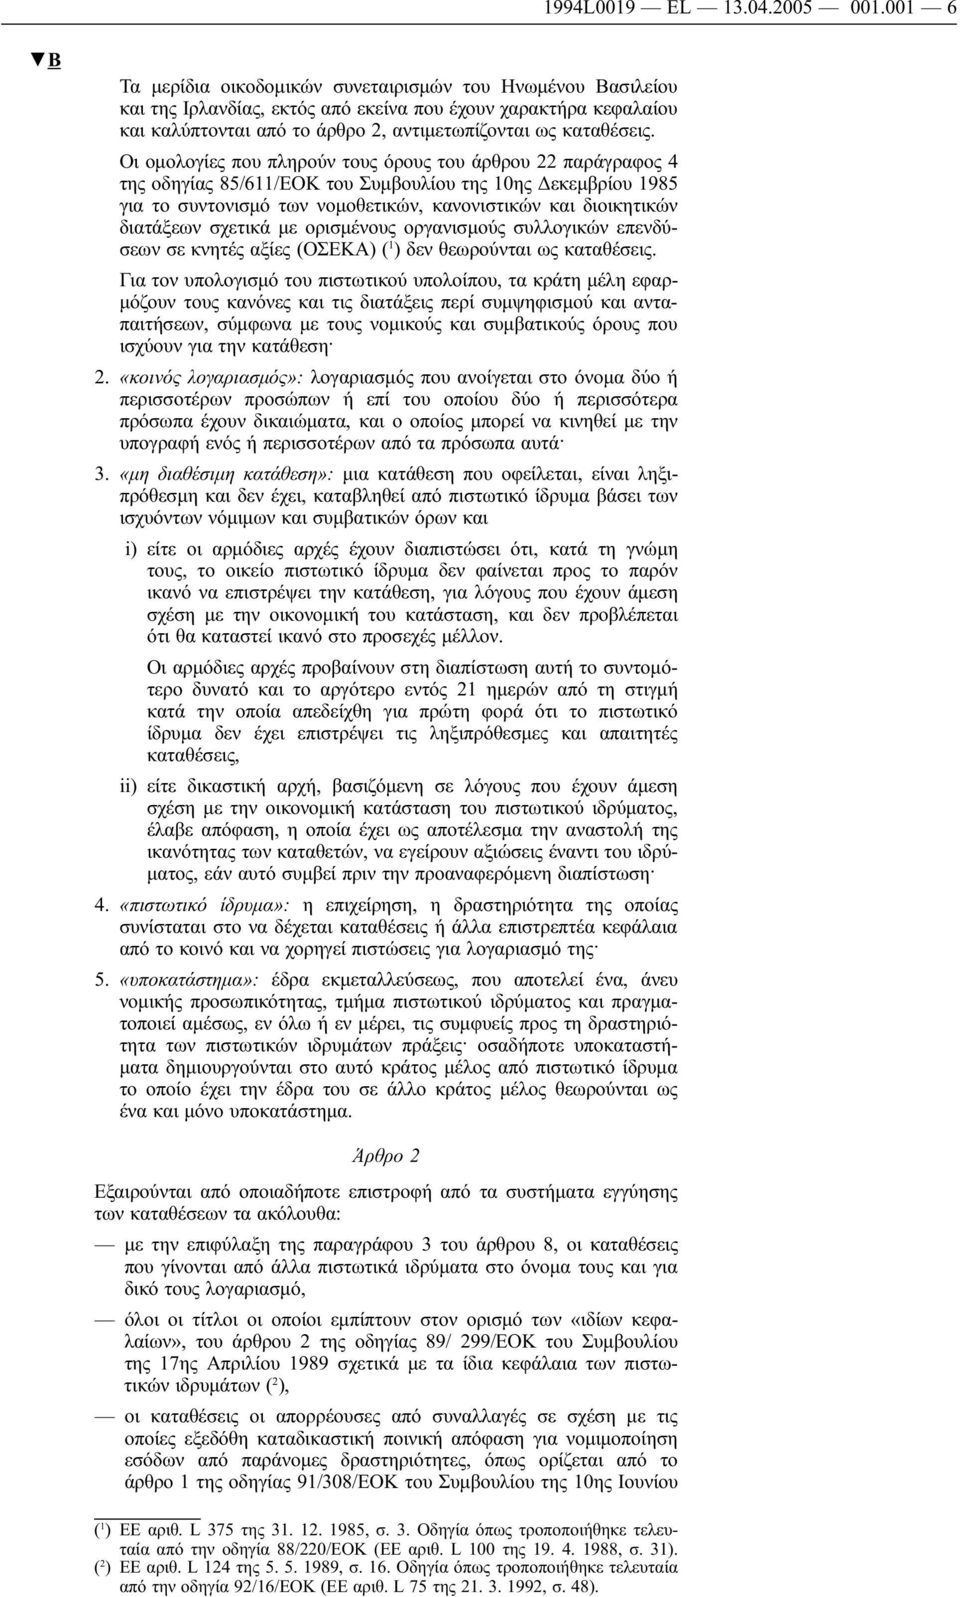 Οι ομολογίες που πληρούν τους όρους του άρθρου 22 παράγραφος 4 της οδηγίας 85/611/ΕΟΚ του Συμβουλίου της 10ης Δεκεμβρίου 1985 για το συντονισμό των νομοθετικών, κανονιστικών και διοικητικών διατάξεων